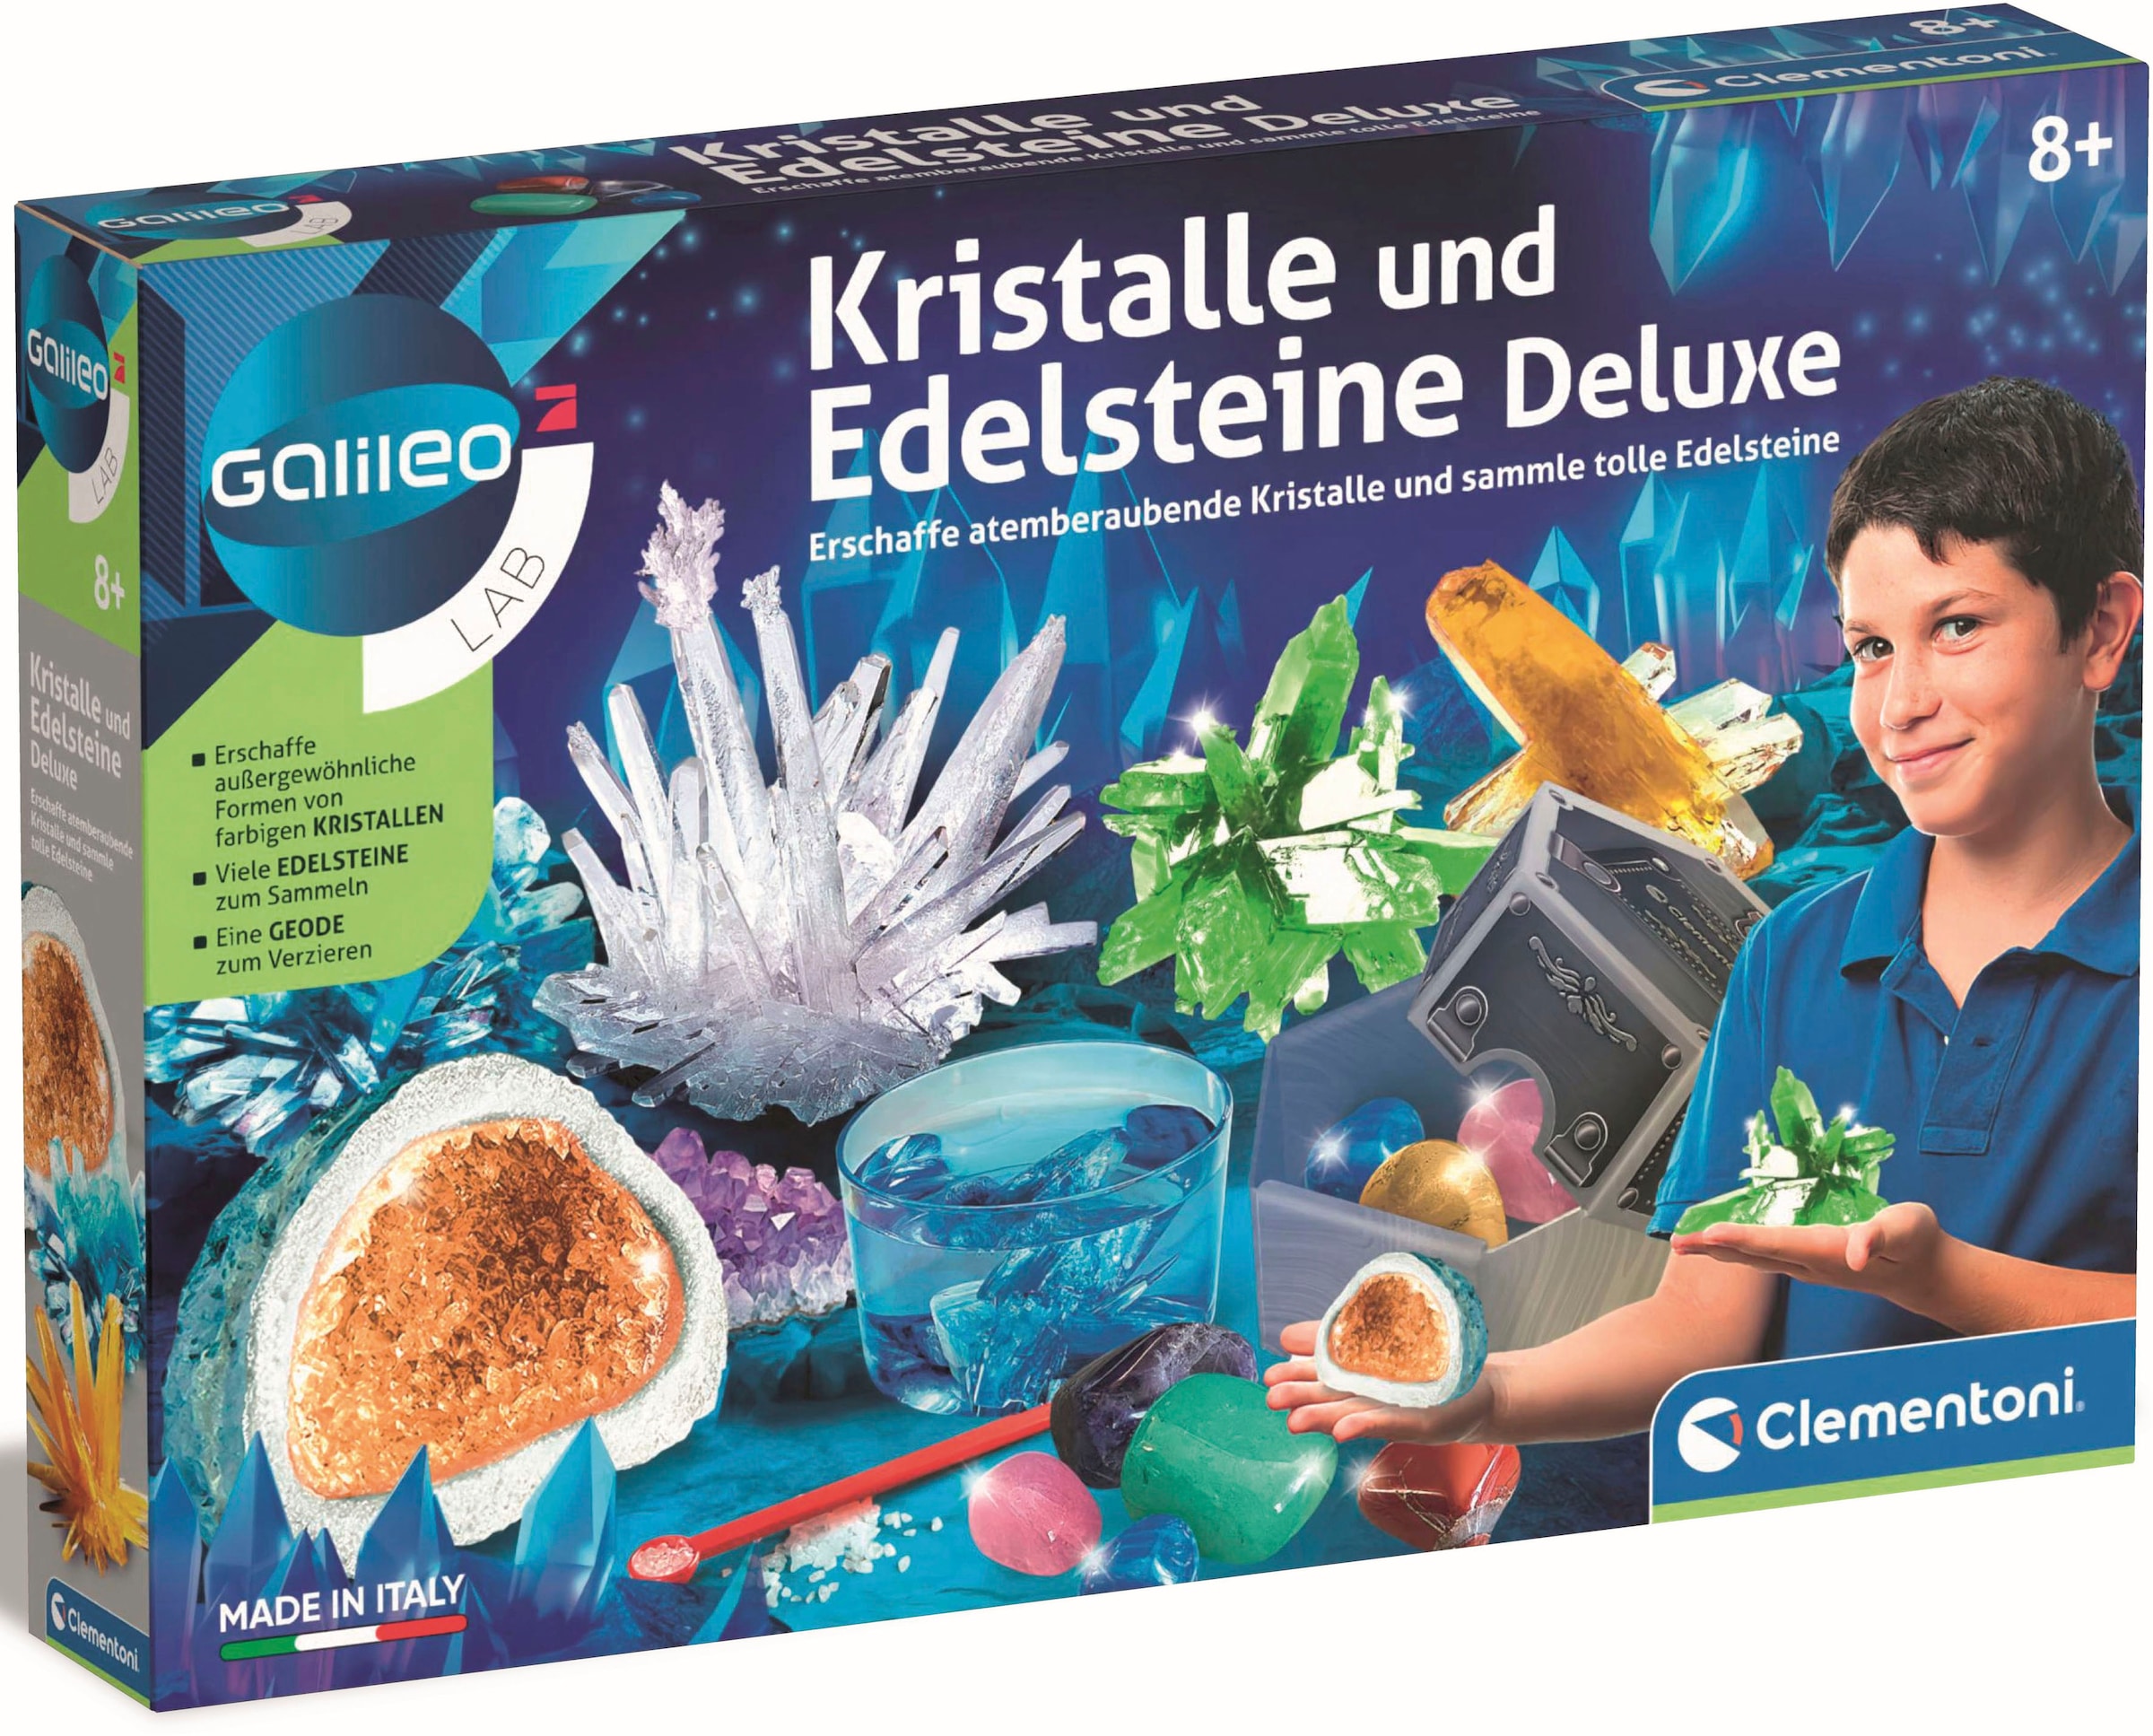 Clementoni® Experimentierkasten »Galileo, Kristalle und Edelsteine Deluxe«, Made in Europe